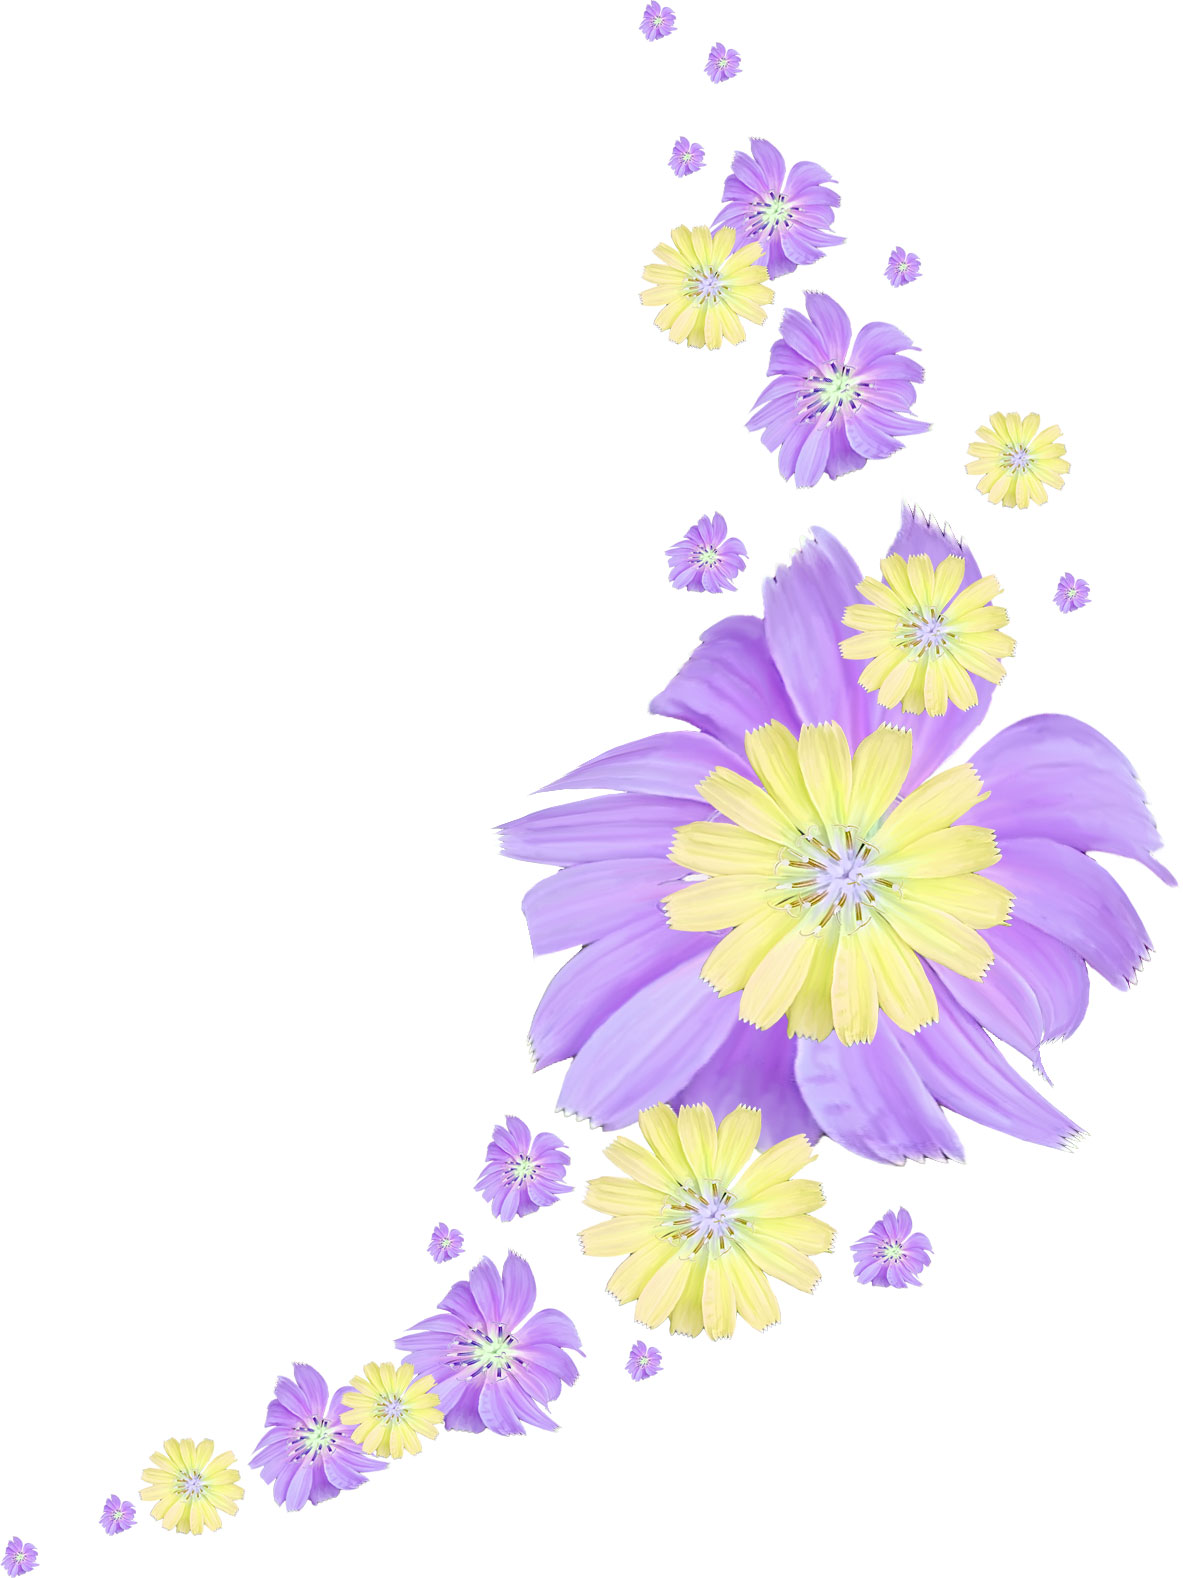 ポップでかわいい花のイラスト フリー素材 No 046 紫 黄 大小